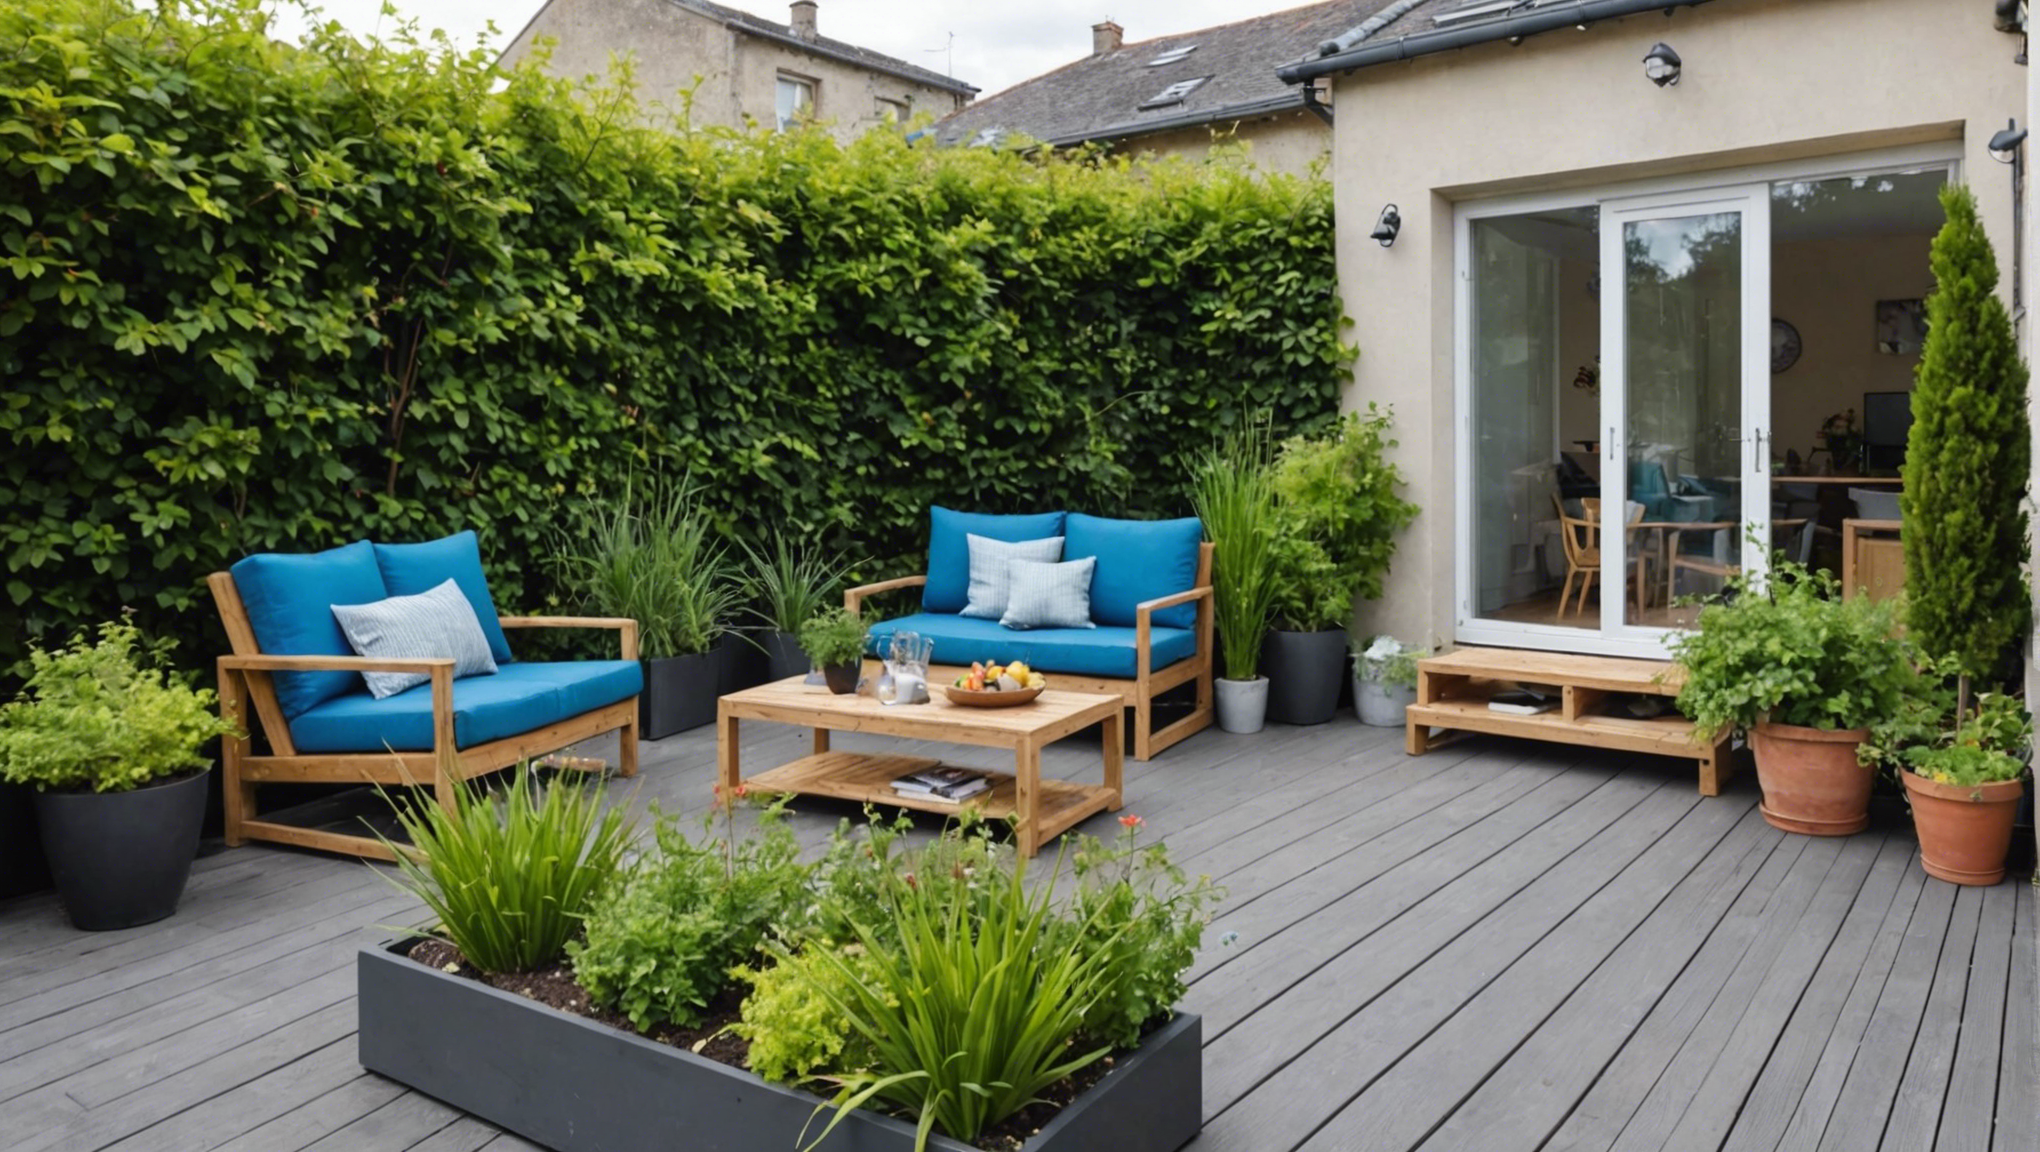 découvrez nos conseils et idées pour aménager un jardin devant votre maison avec une terrasse, pour profiter pleinement de votre espace extérieur.